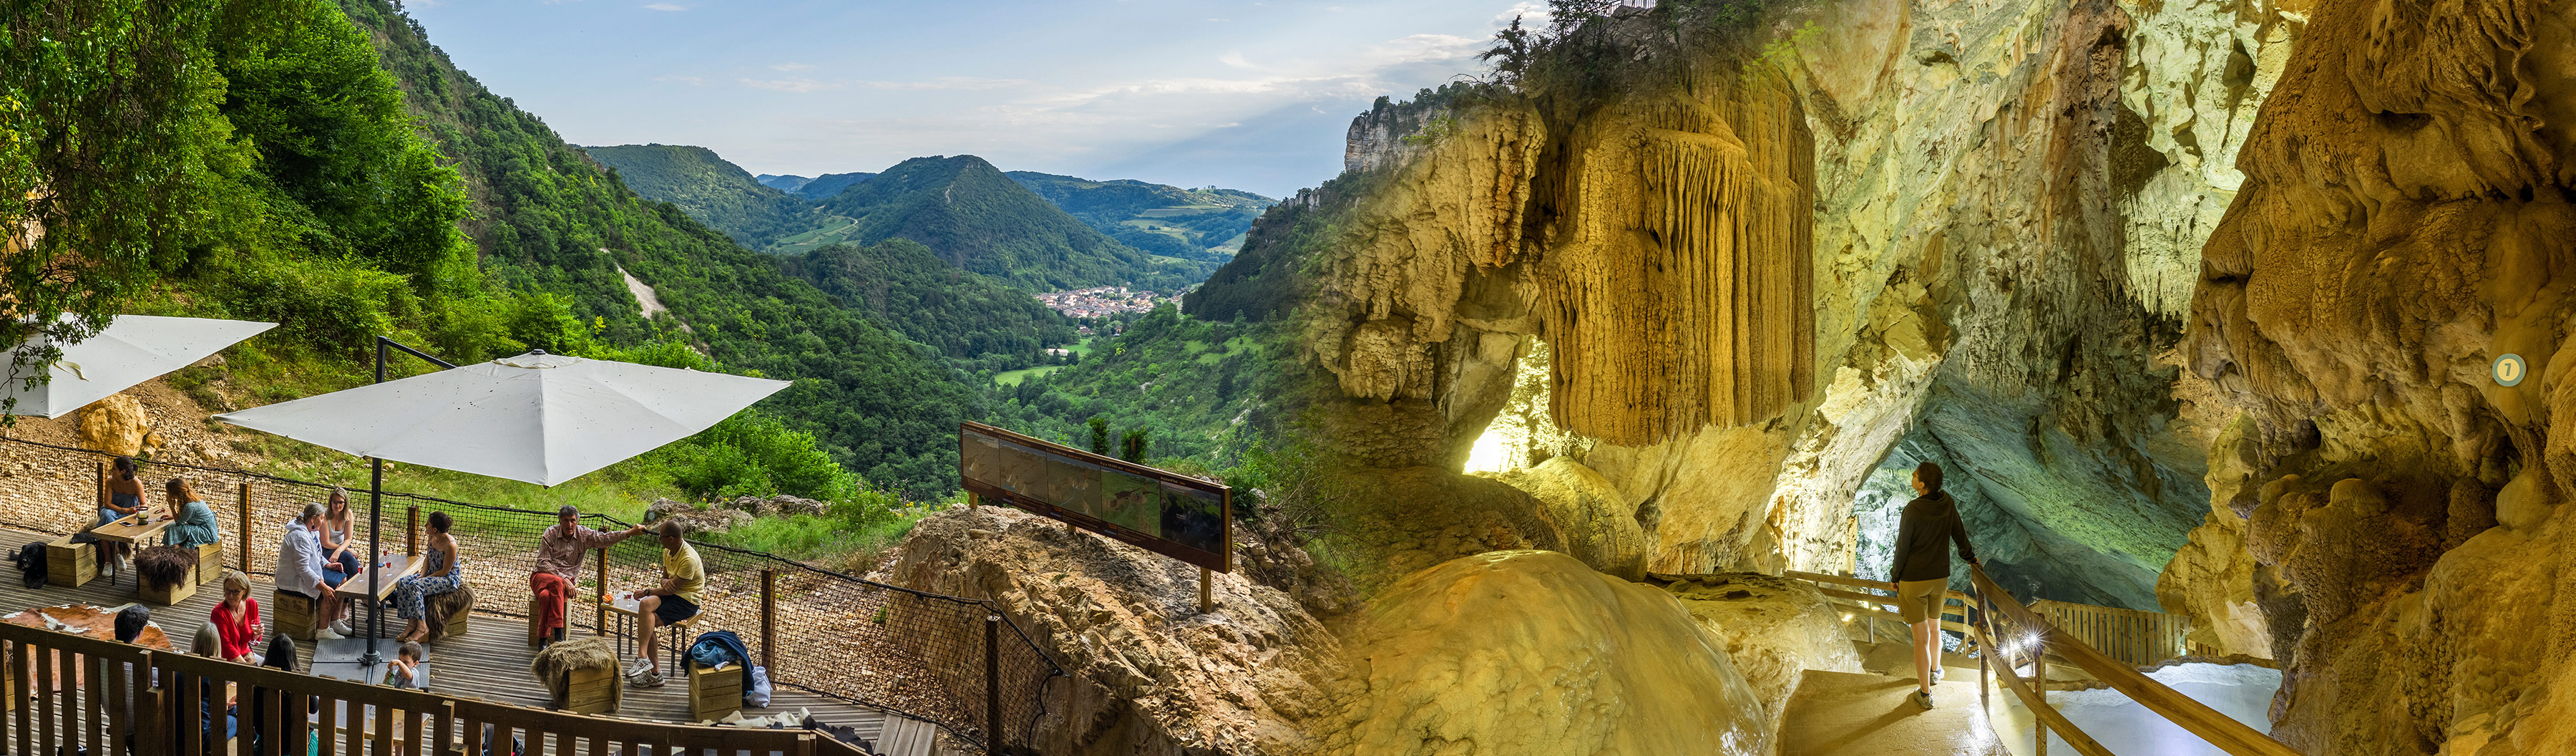 journee-internationale-des-grottes-touristiques